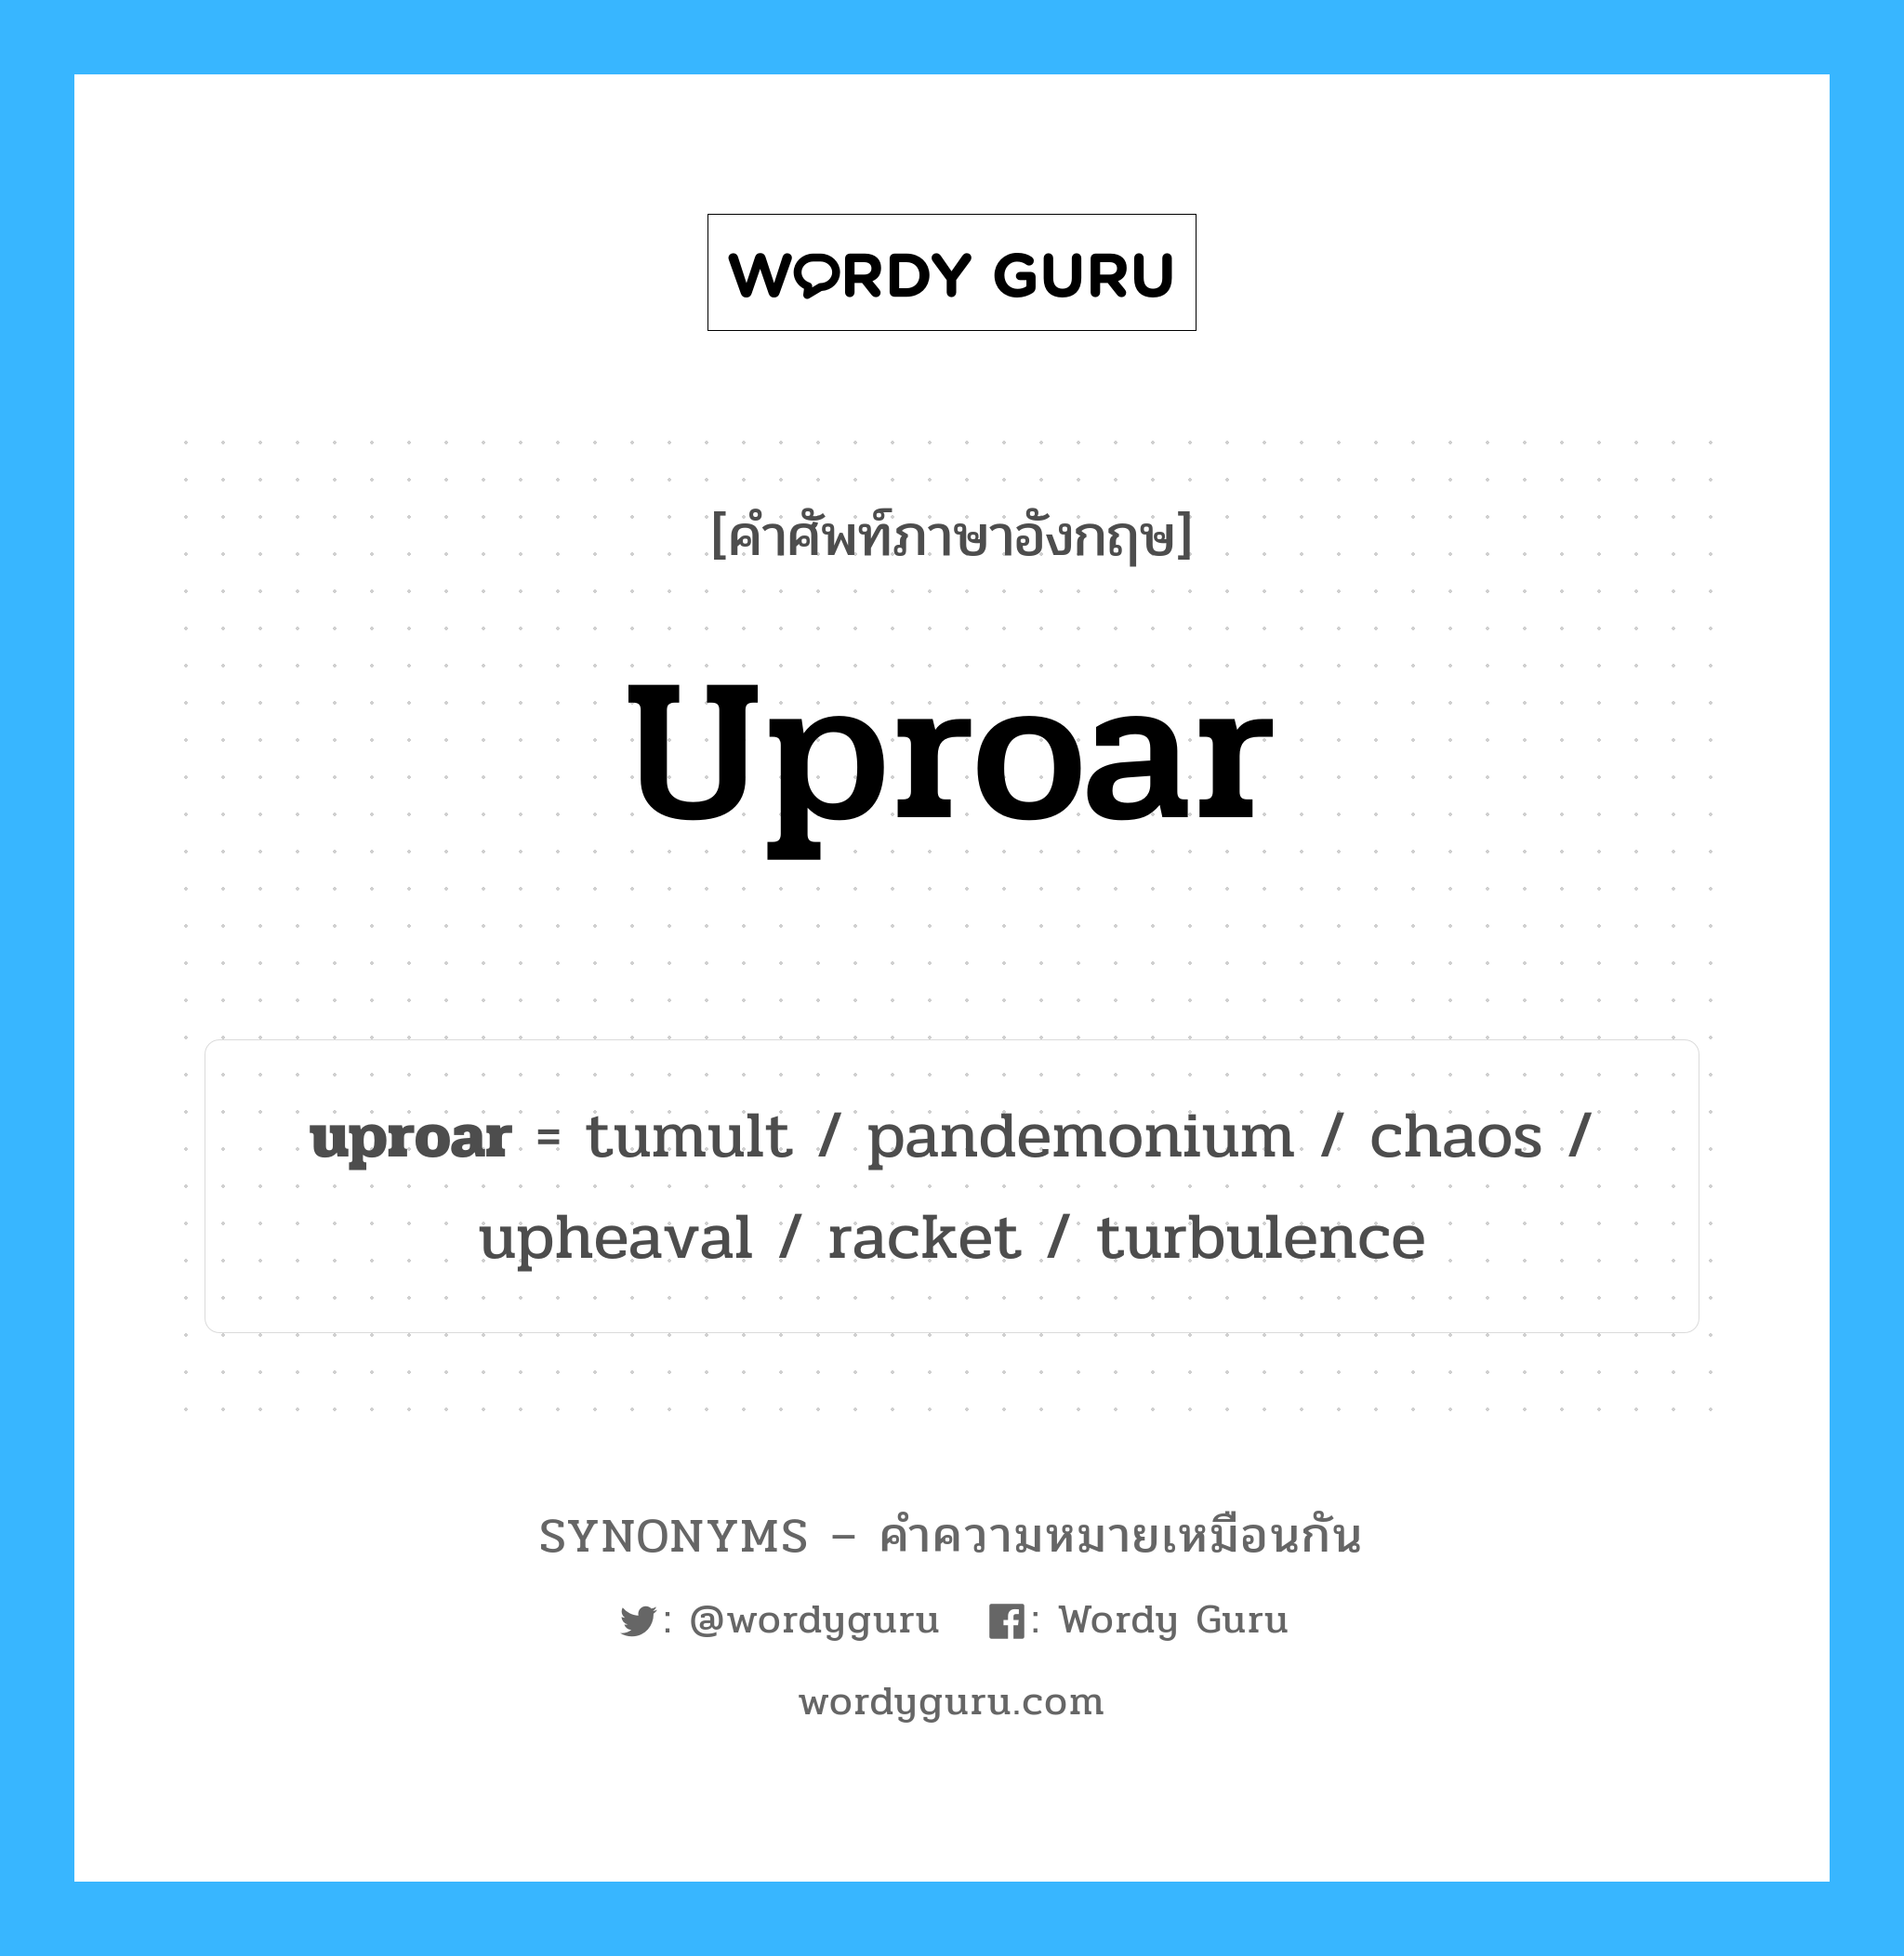 racket เป็นหนึ่งใน uproar และมีคำอื่น ๆ อีกดังนี้, คำศัพท์ภาษาอังกฤษ racket ความหมายคล้ายกันกับ uproar แปลว่า ไม้แบดมินตัน หมวด uproar